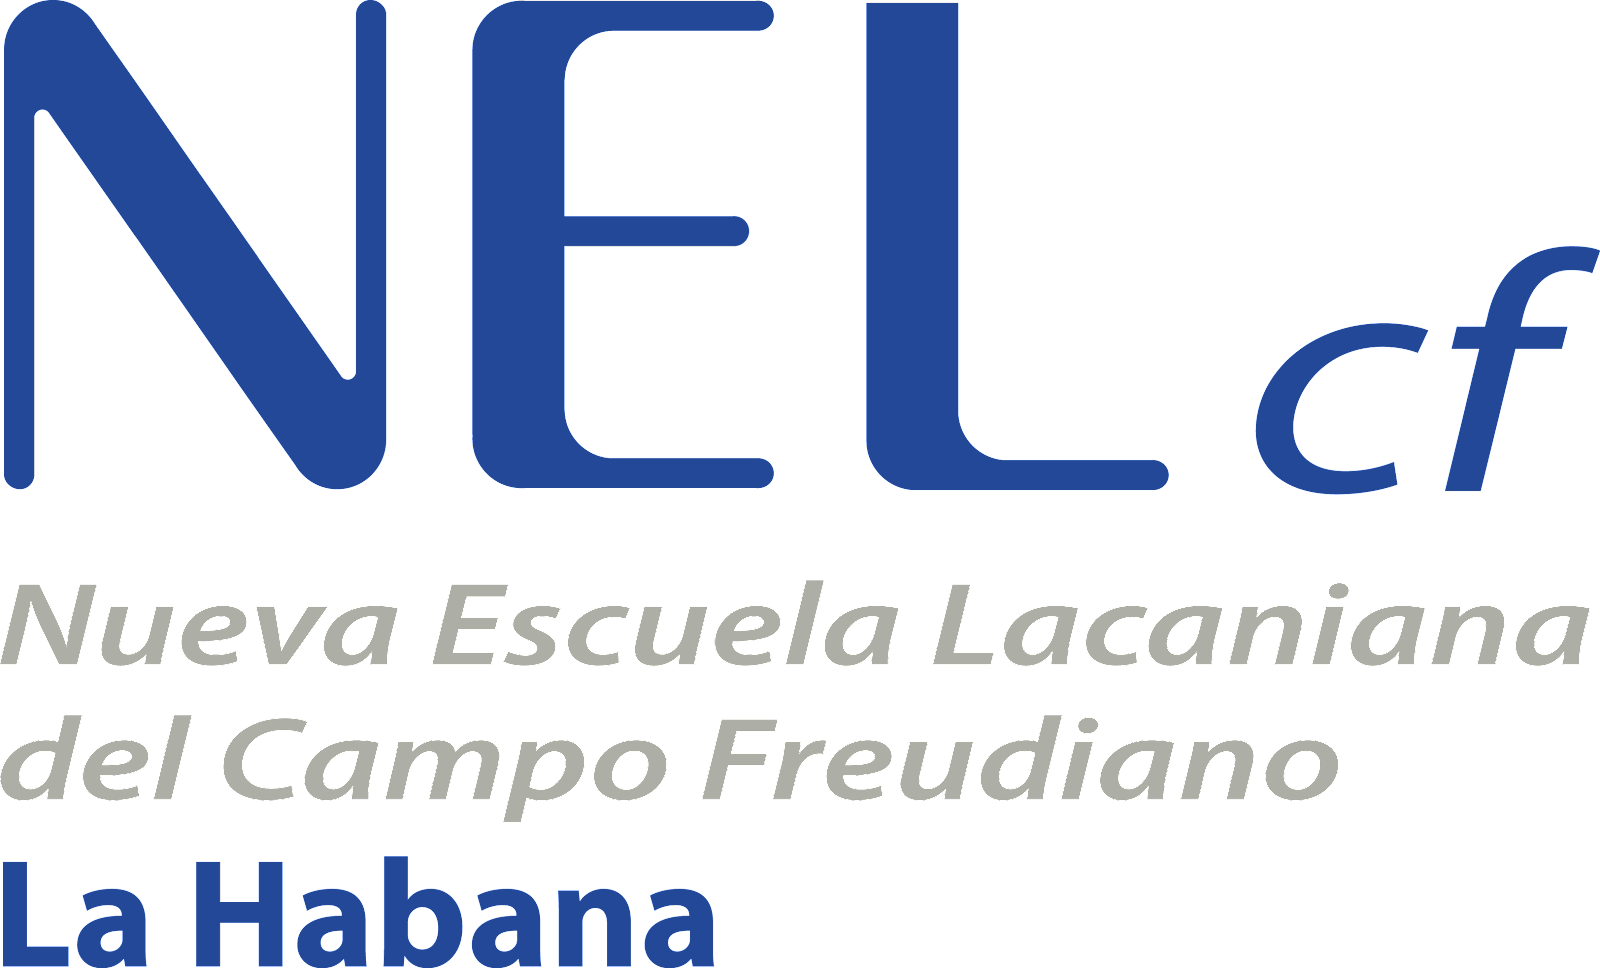 NELcf–La Habana